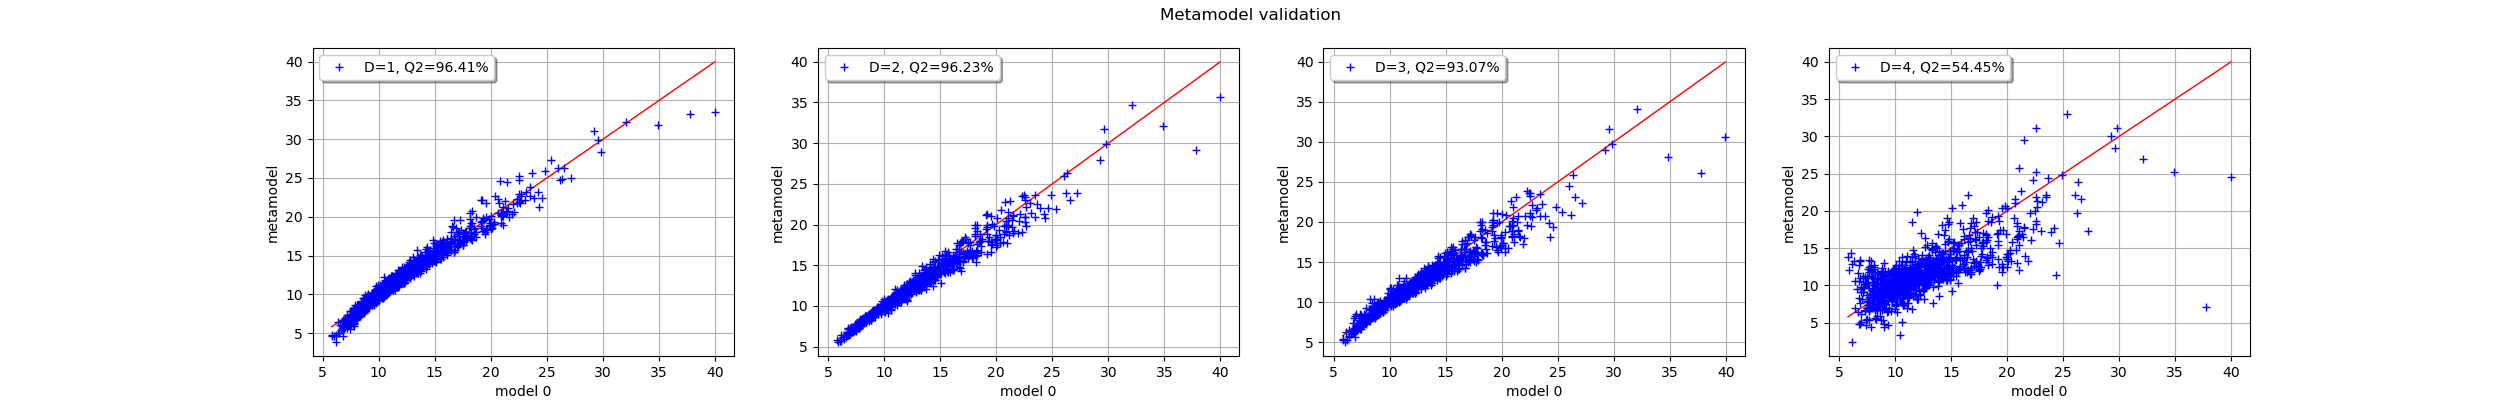 Metamodel validation